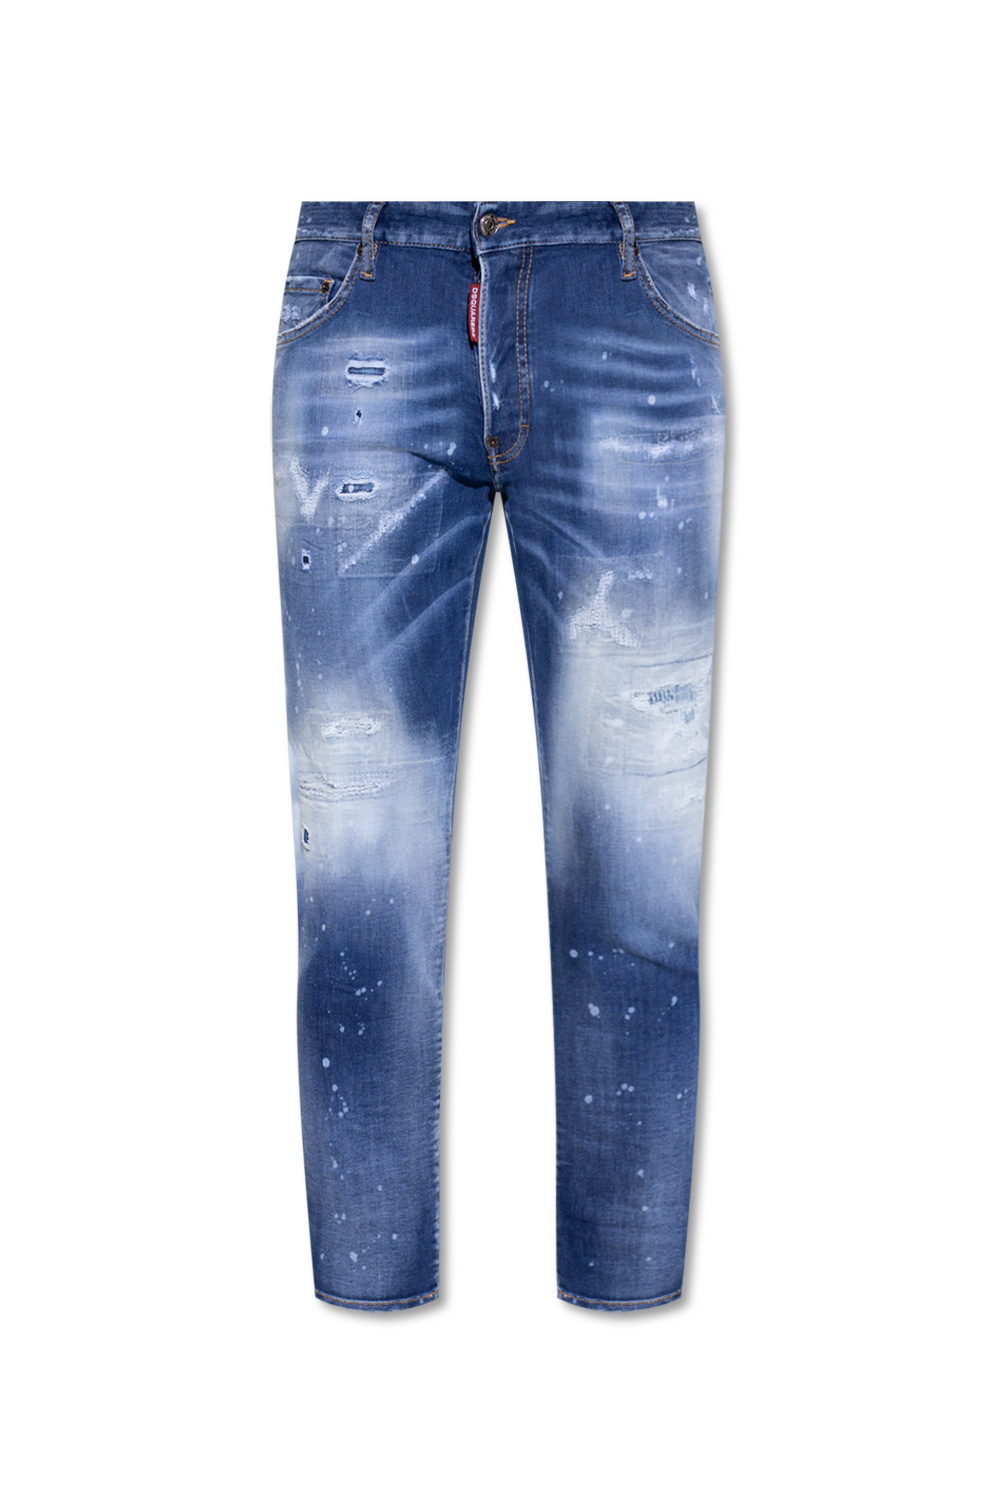 Dsquared2 'Skater' jeans | Men's Clothing | JmksportShops